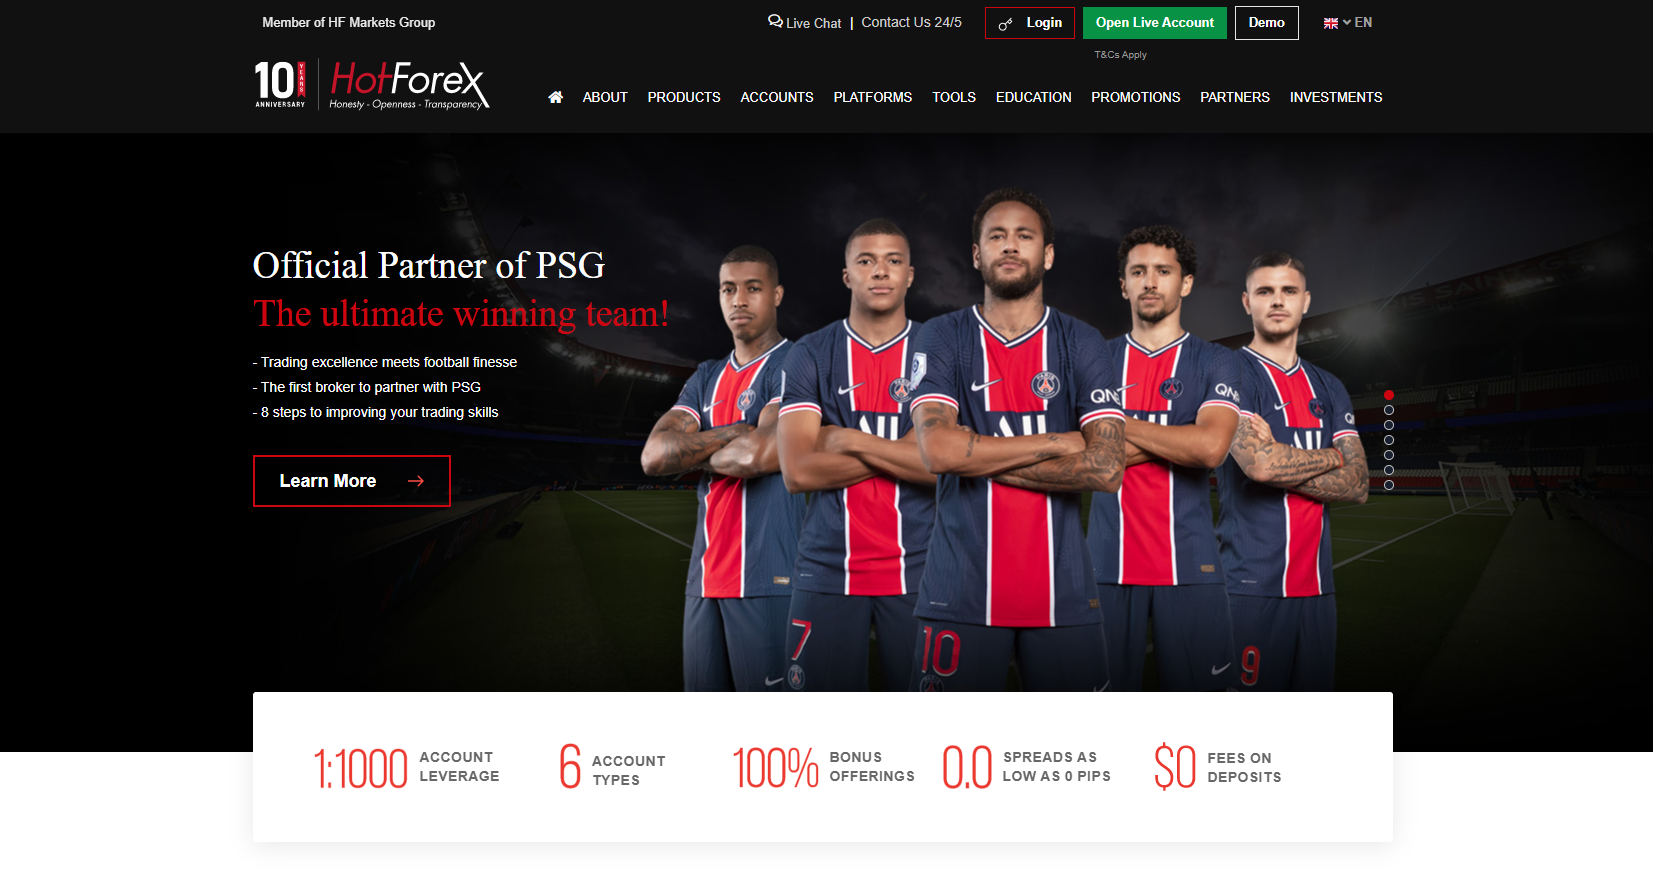 HotForex'nin resmi web sitesi